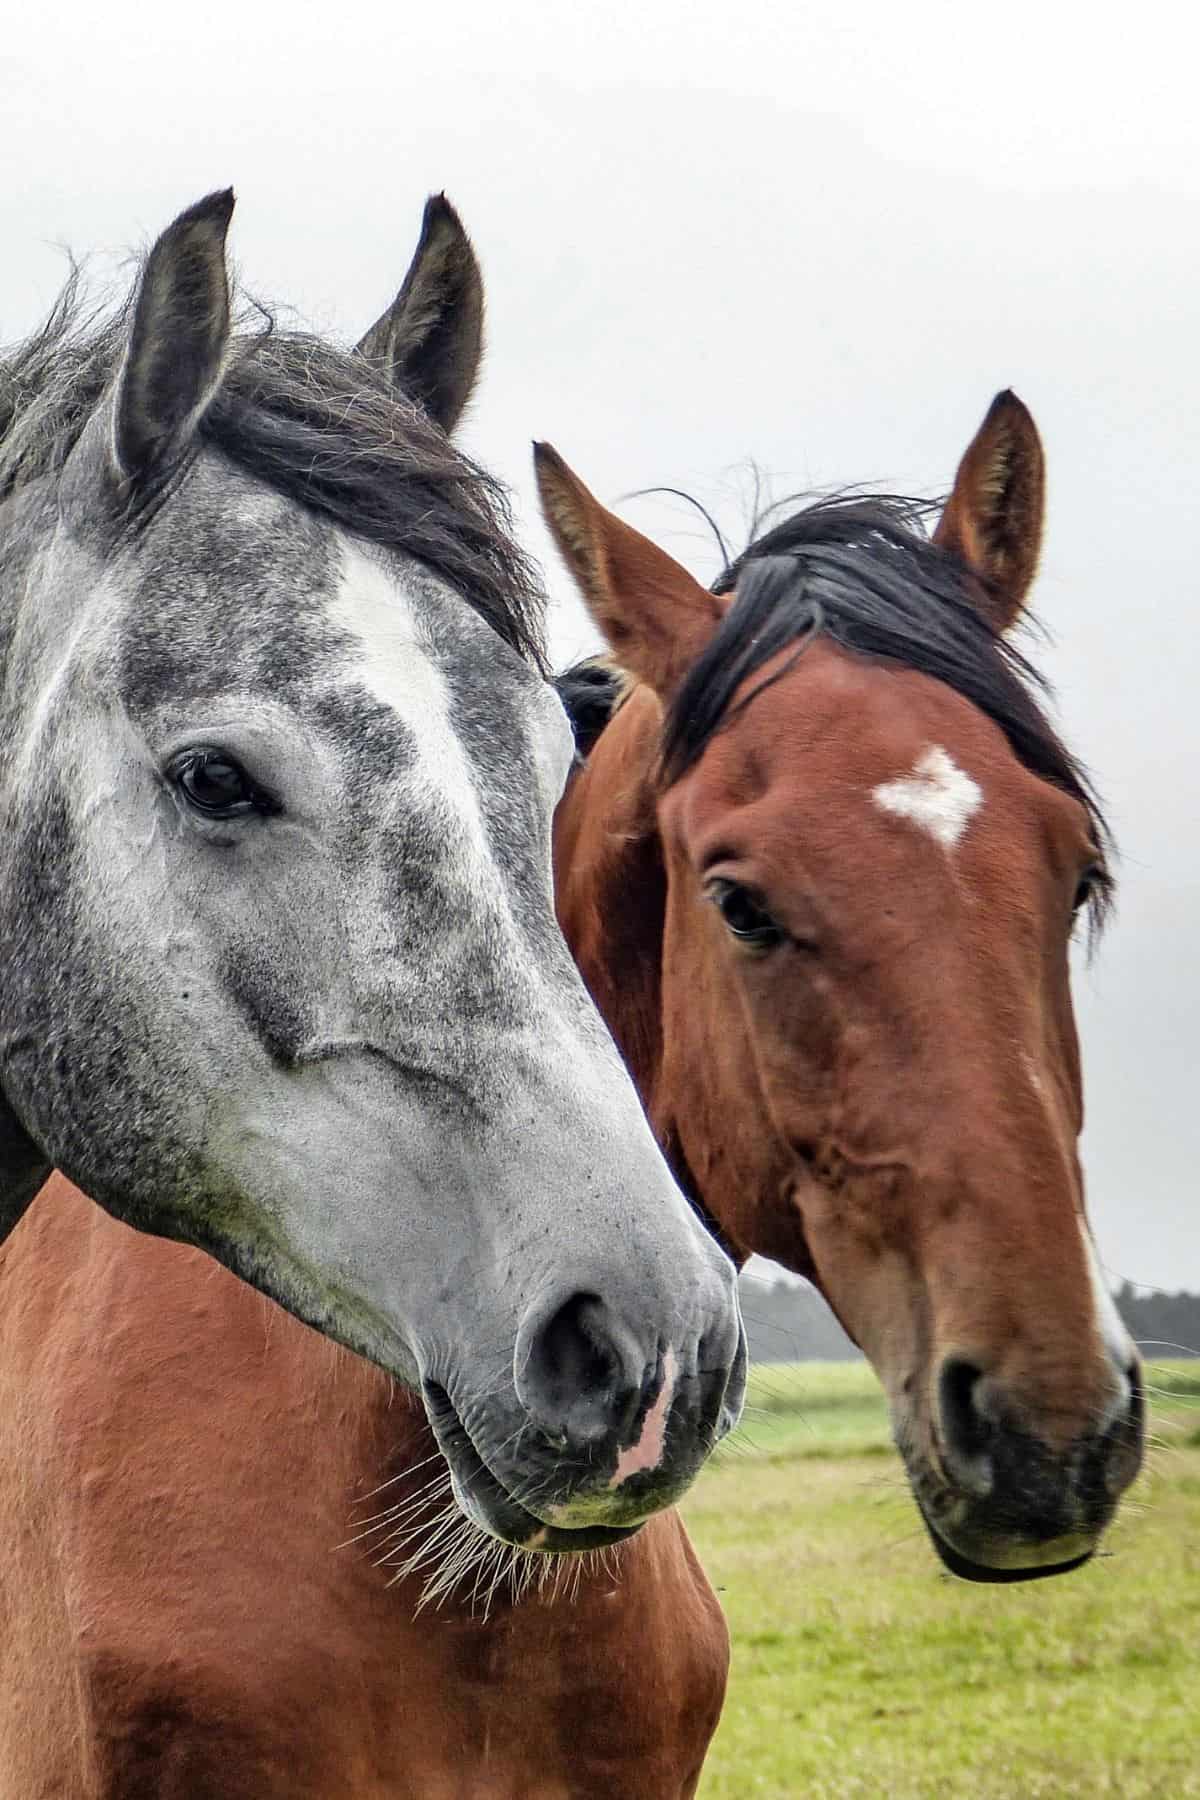 Gray and brown horse looking toward camera